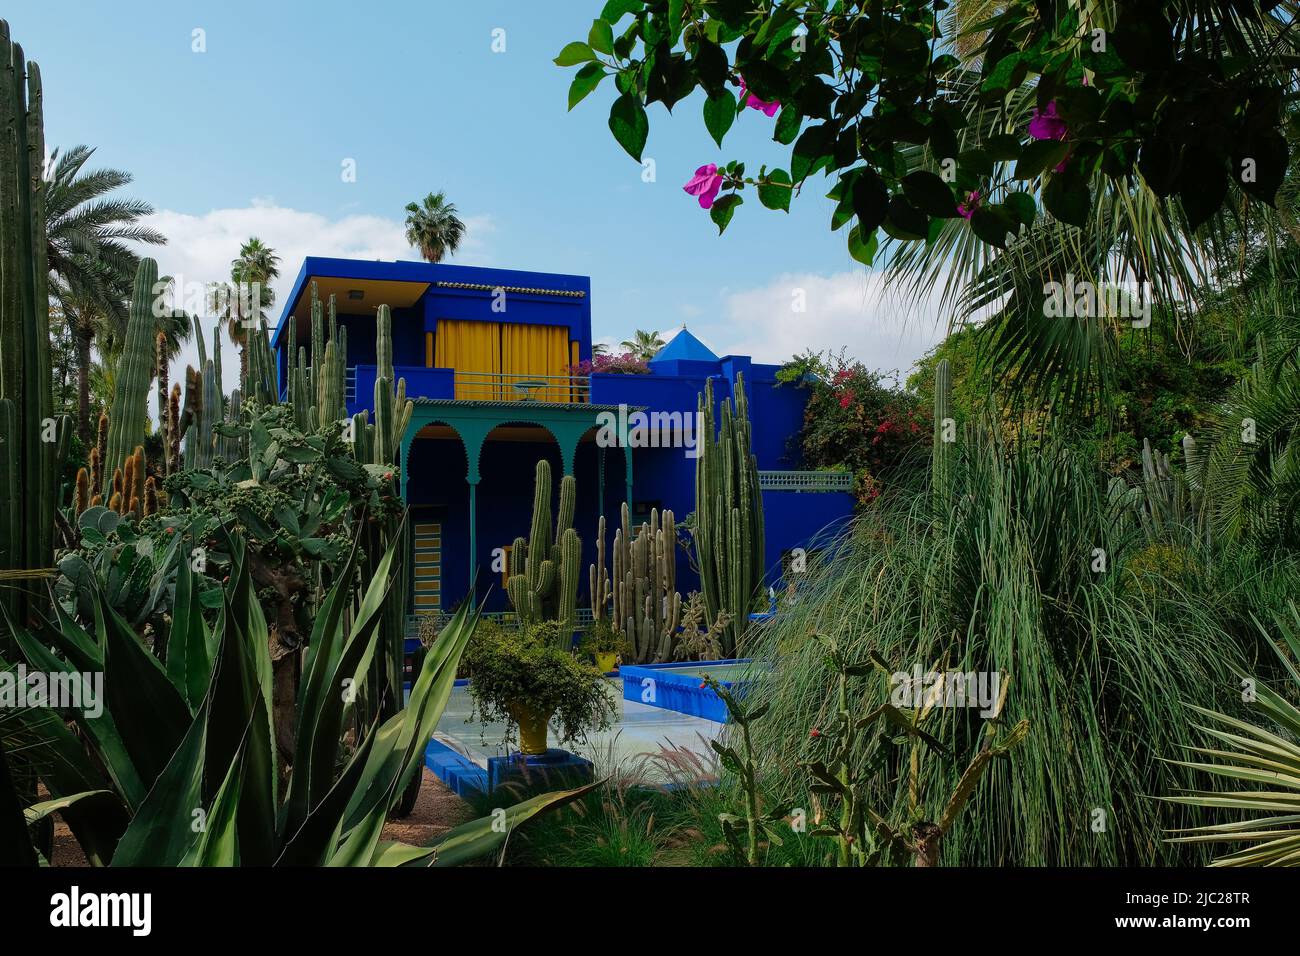 Marrakech, Maroc : maison Yves Saint Laurent transformée en musée dans un bleu outremer vibrant provenant du jardin botanique exotique de Jacques Majorelle avec fontaine. Banque D'Images